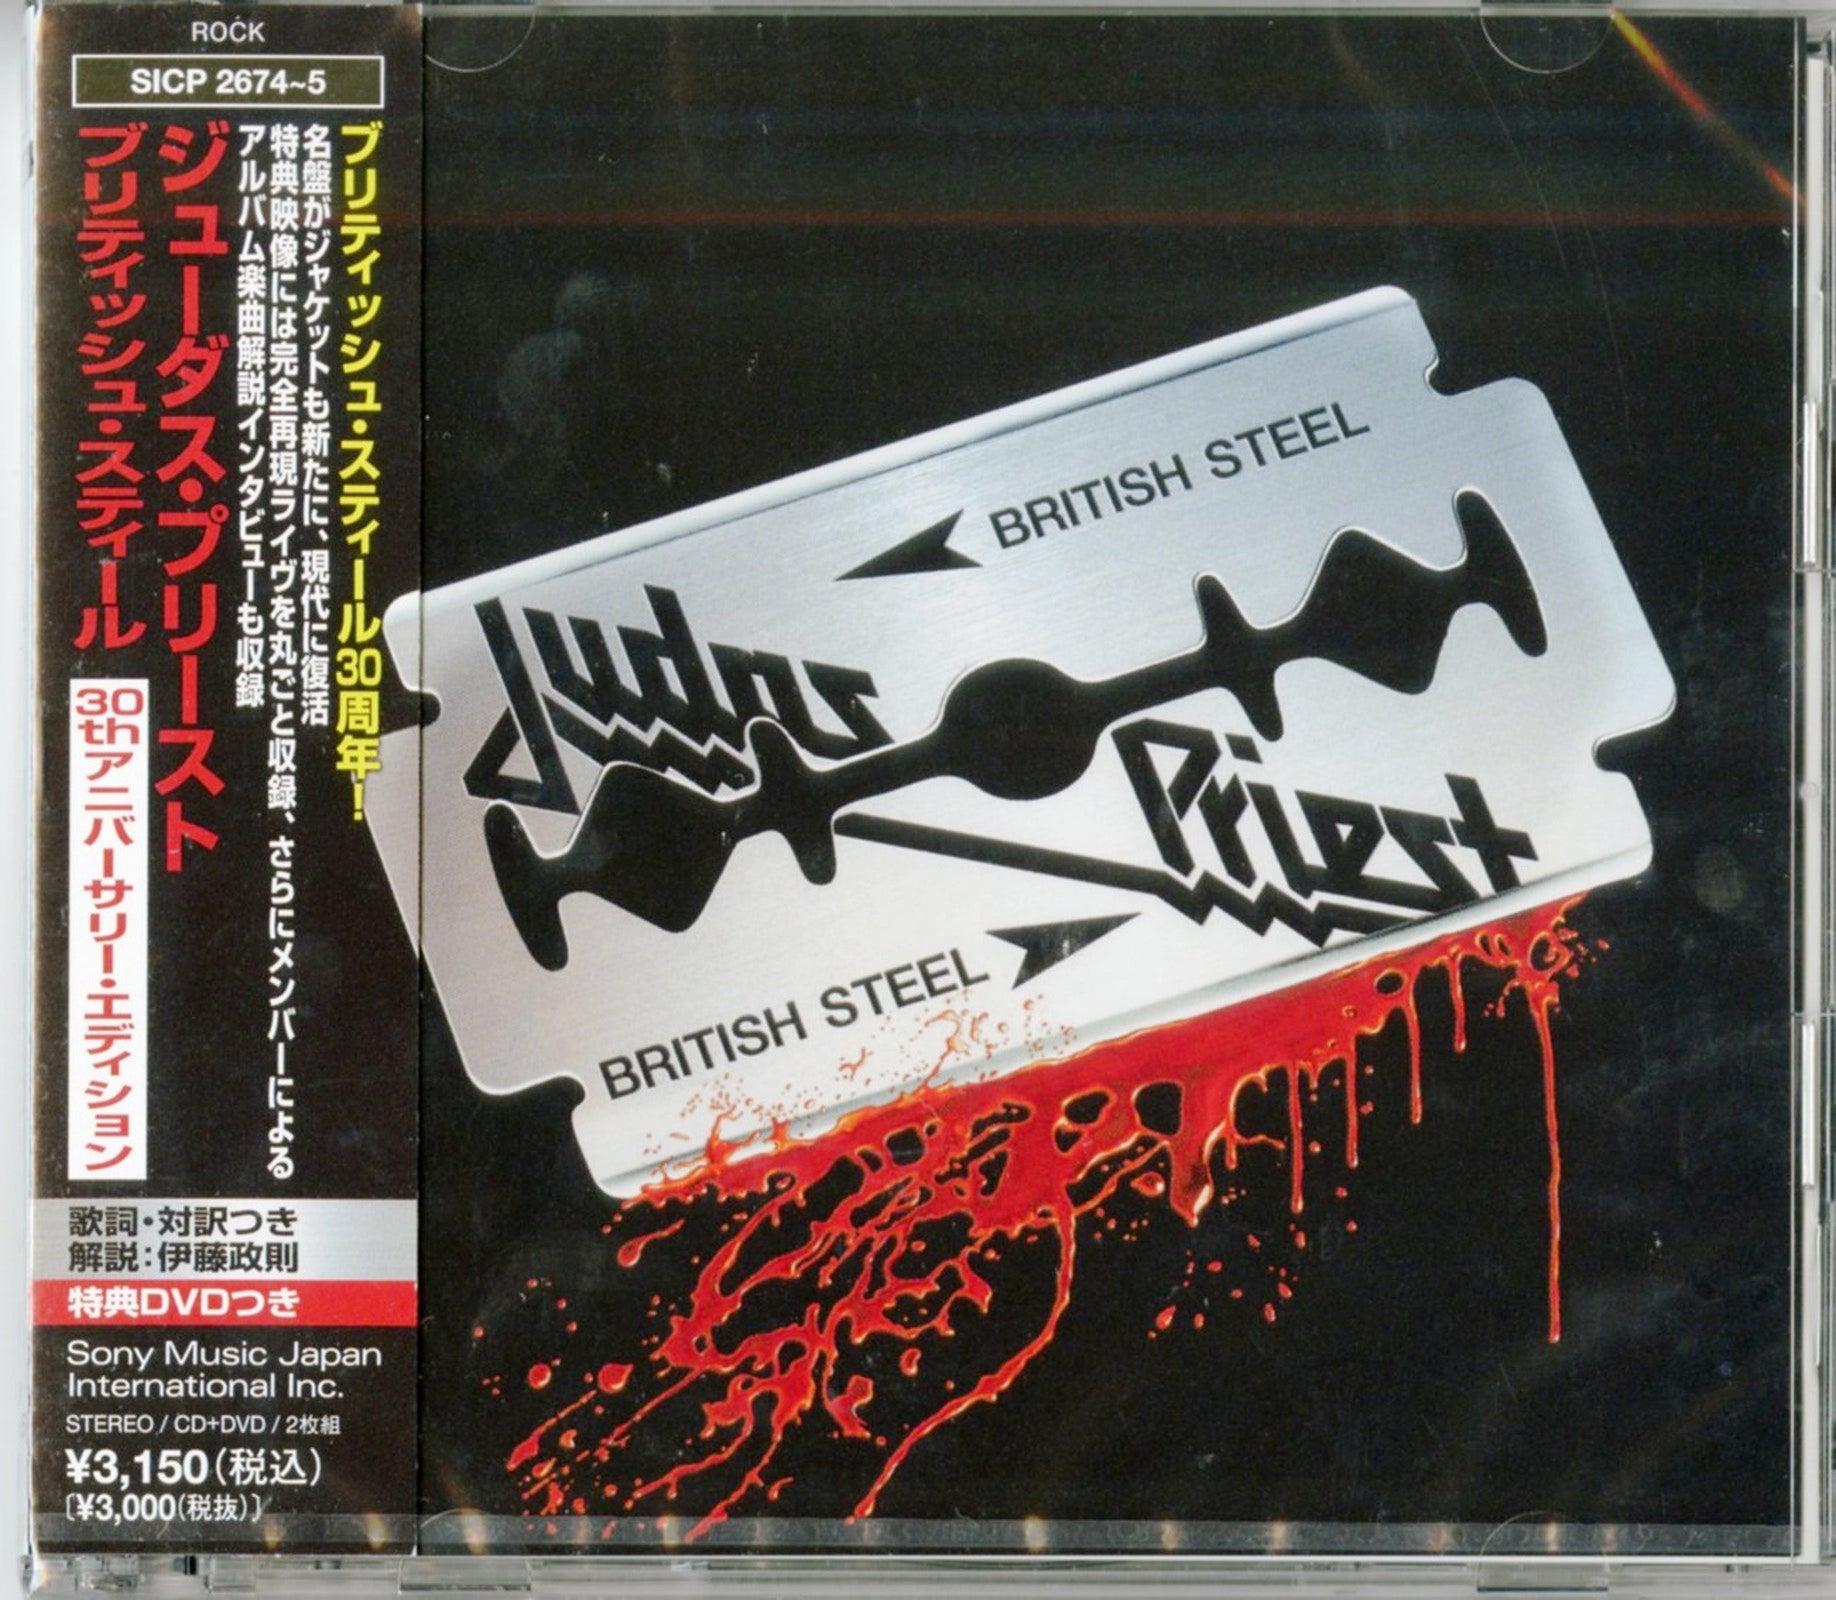  British Steel: CDs & Vinyl